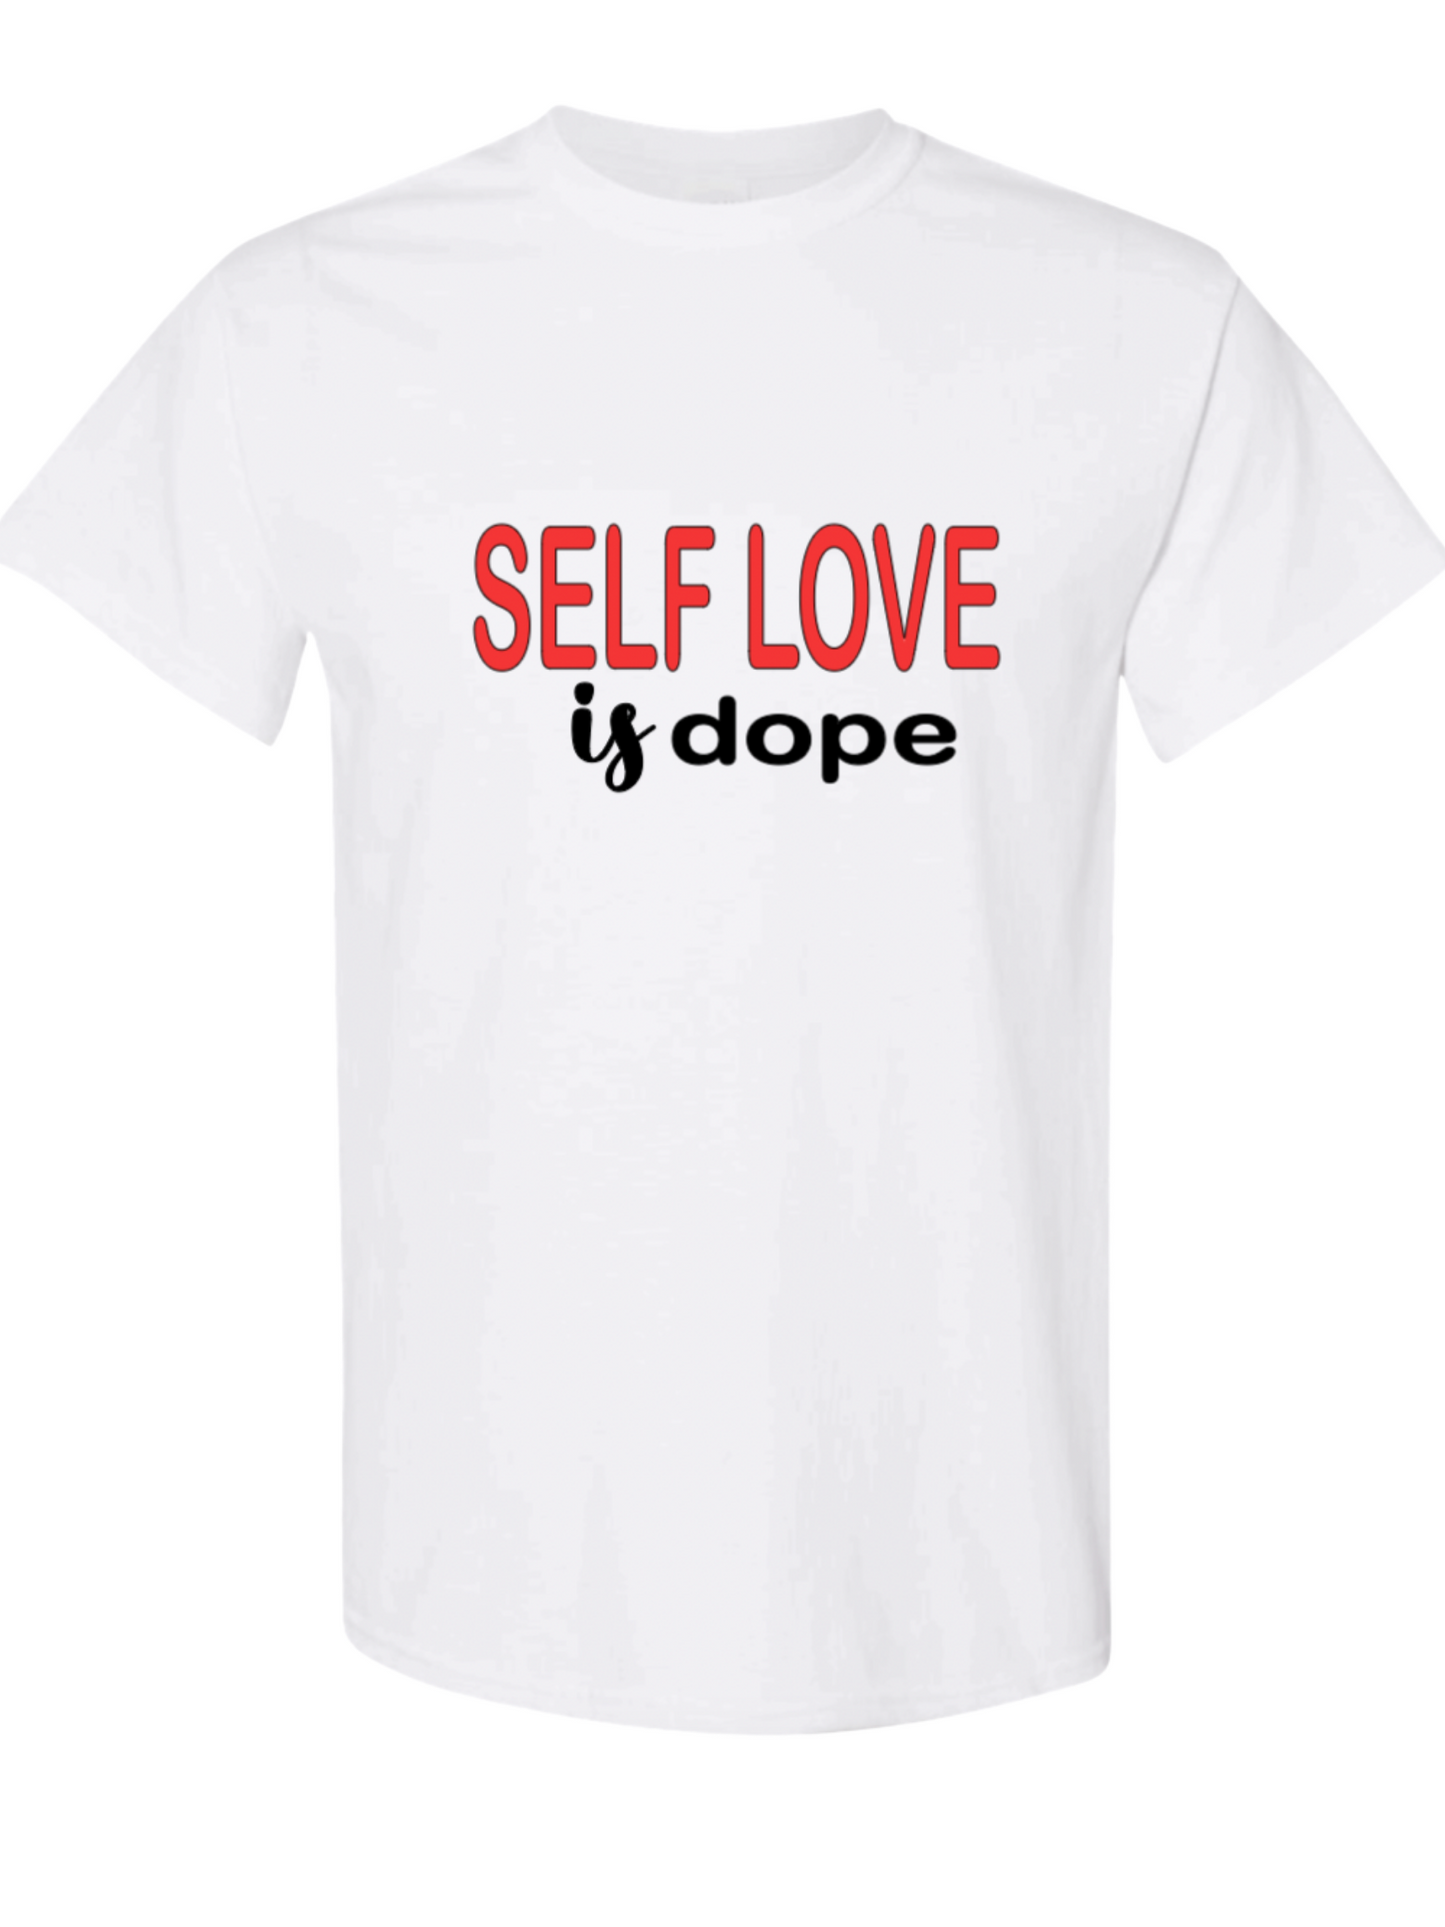 Self Love is Dope Tee and Hoodie